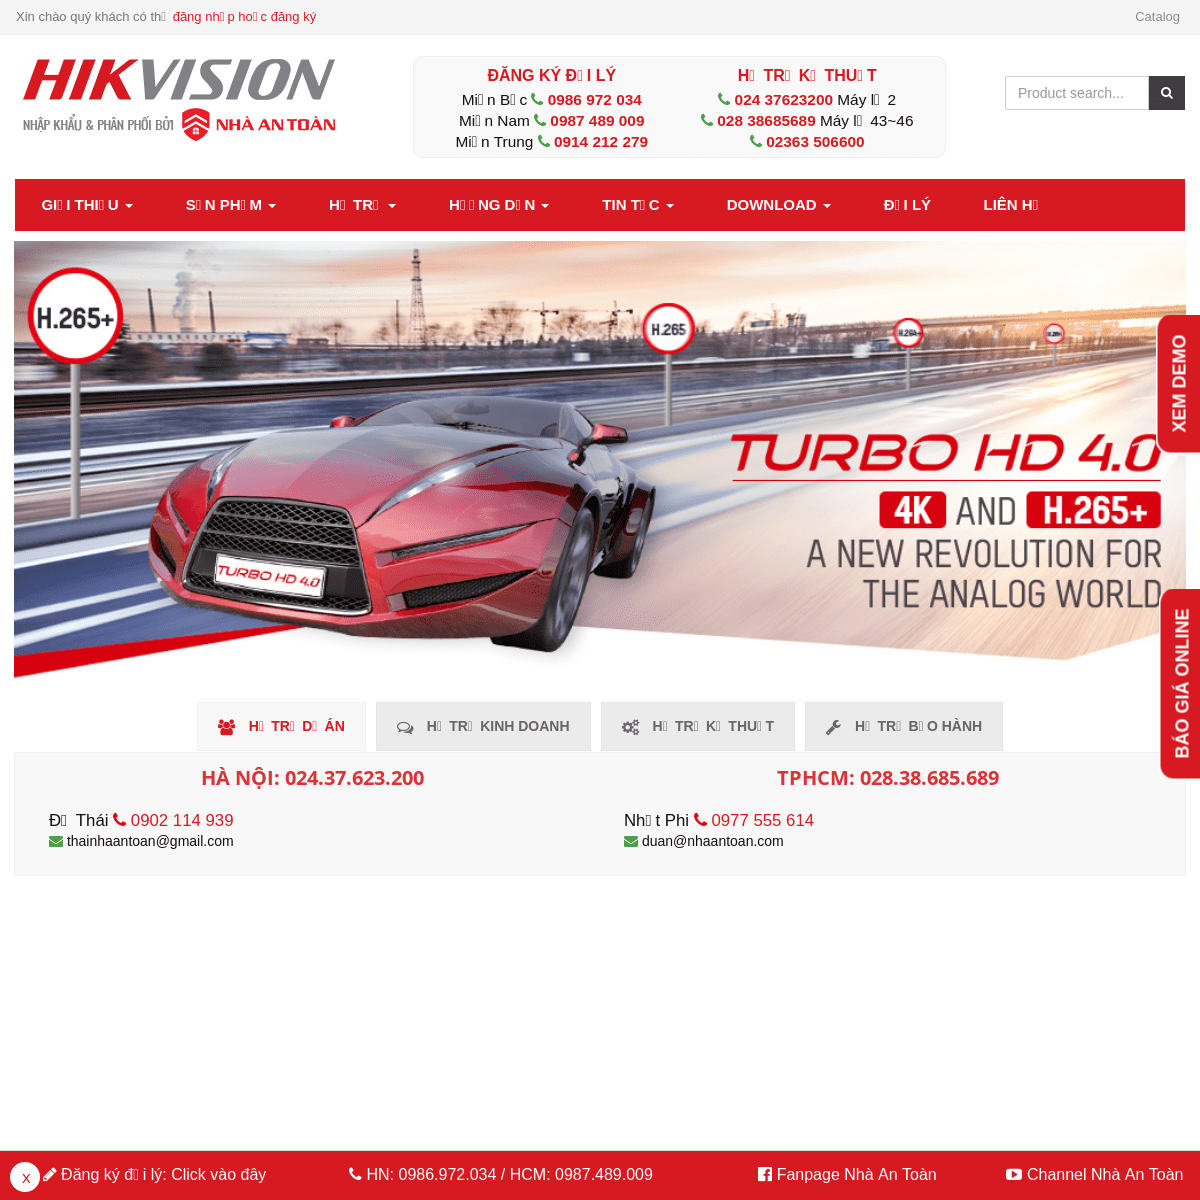 HIKVISION VIỆT NAM - Nhà nhập khẩu phân phối chính thức Hikvision